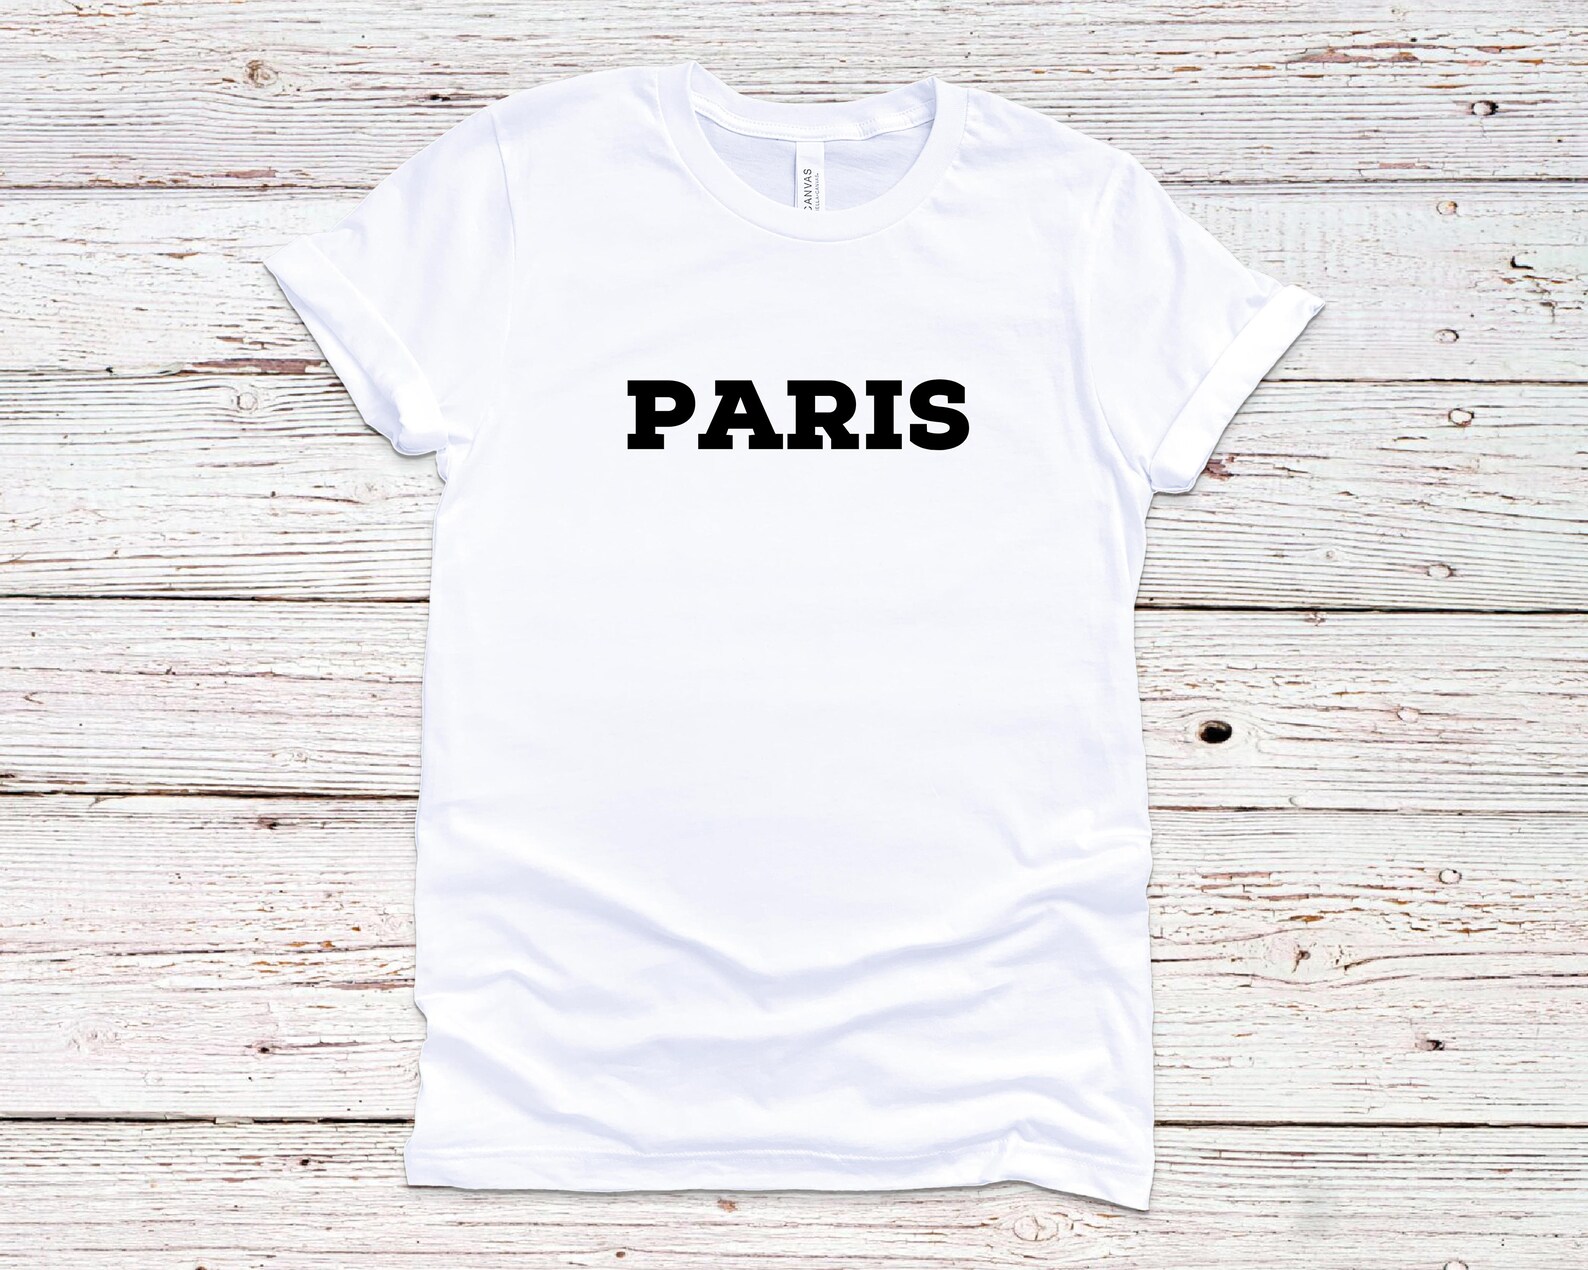 City T-shirt custom city name t-shirt Paris t-shirt custom | Etsy